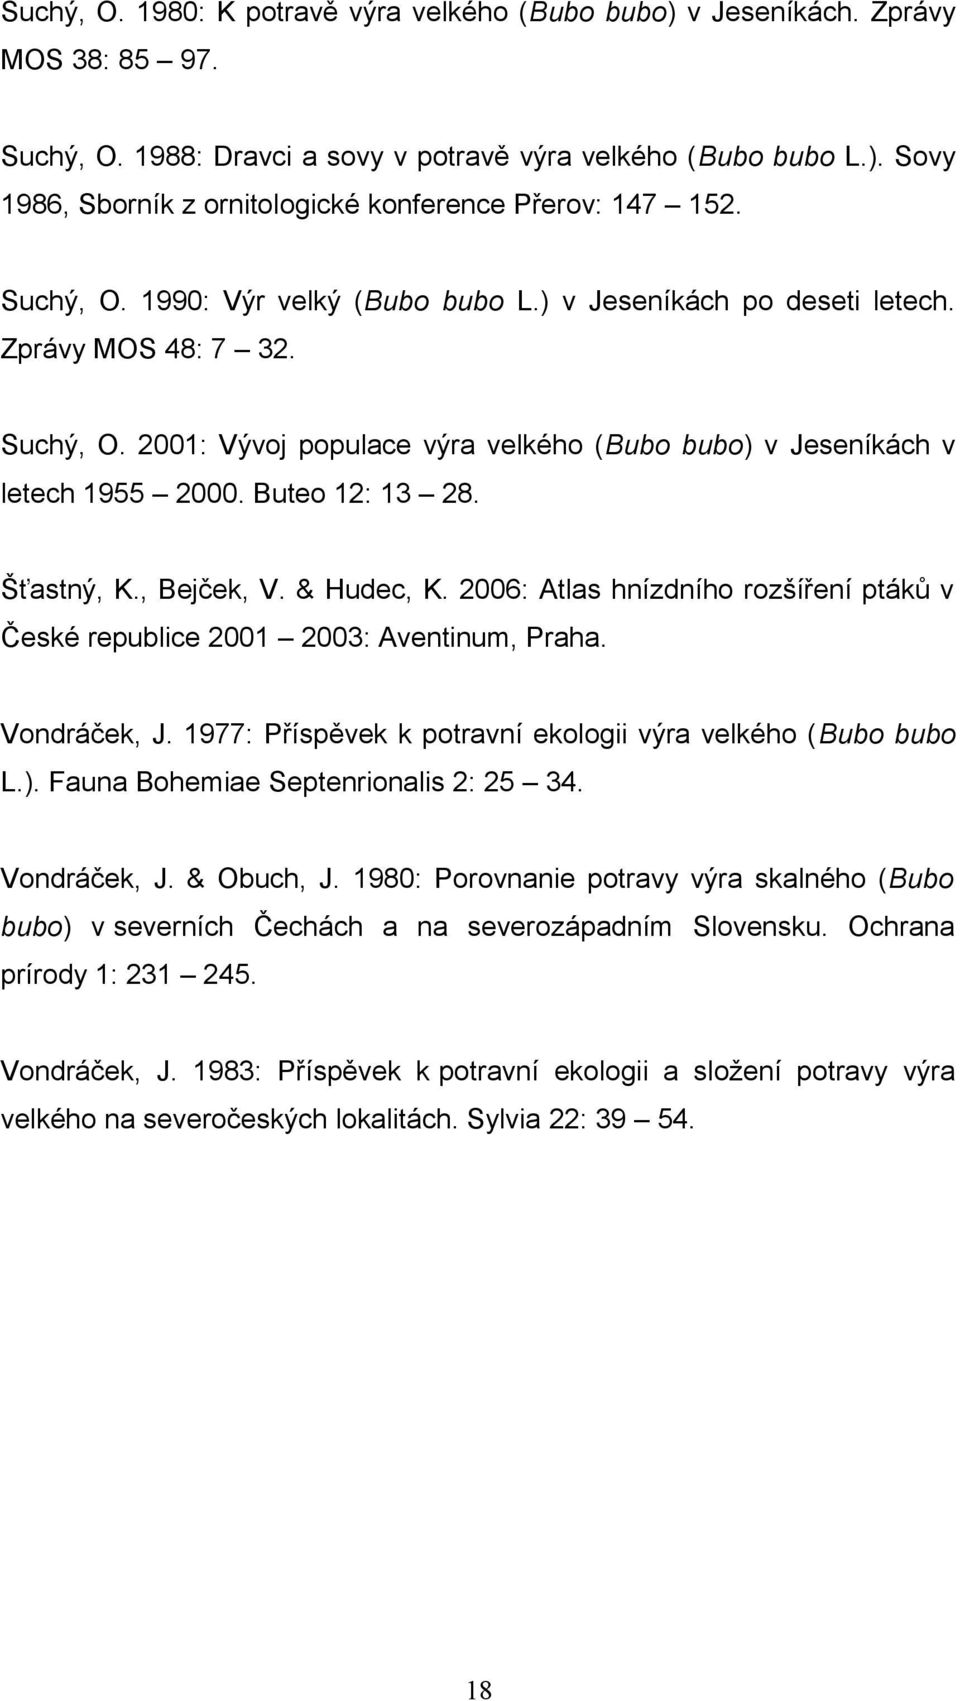 Šťastný, K., Bejček, V. & Hudec, K. 2006: Atlas hnízdního rozšíření ptáků v České republice 2001 2003: Aventinum, Praha. Vondráček, J. 1977: Příspěvek k potravní ekologii výra velkého (Bubo bubo L.).